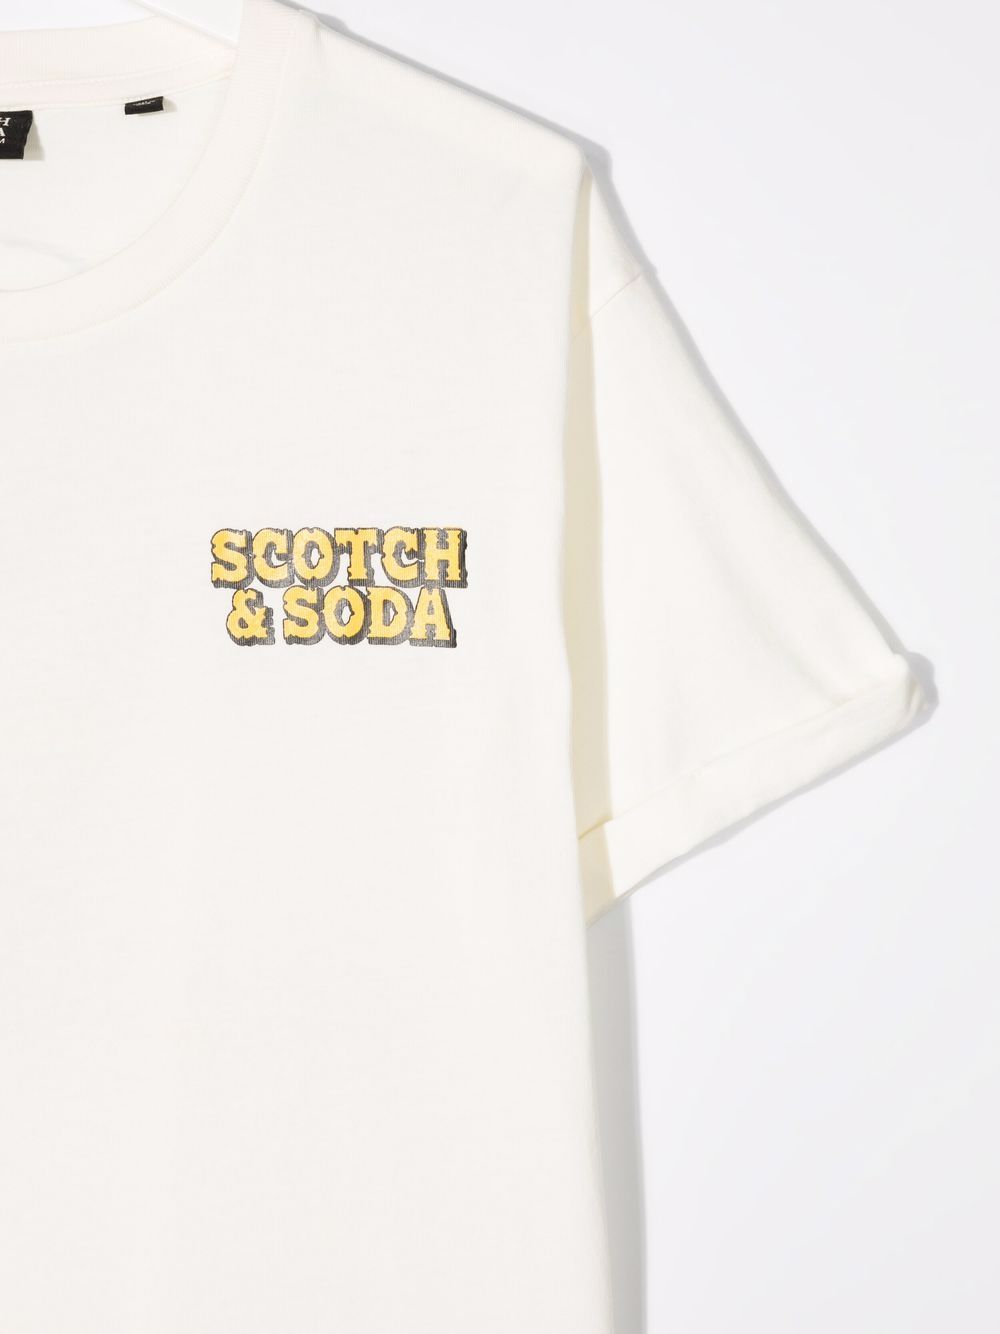 фото Scotch & soda футболка с логотипом